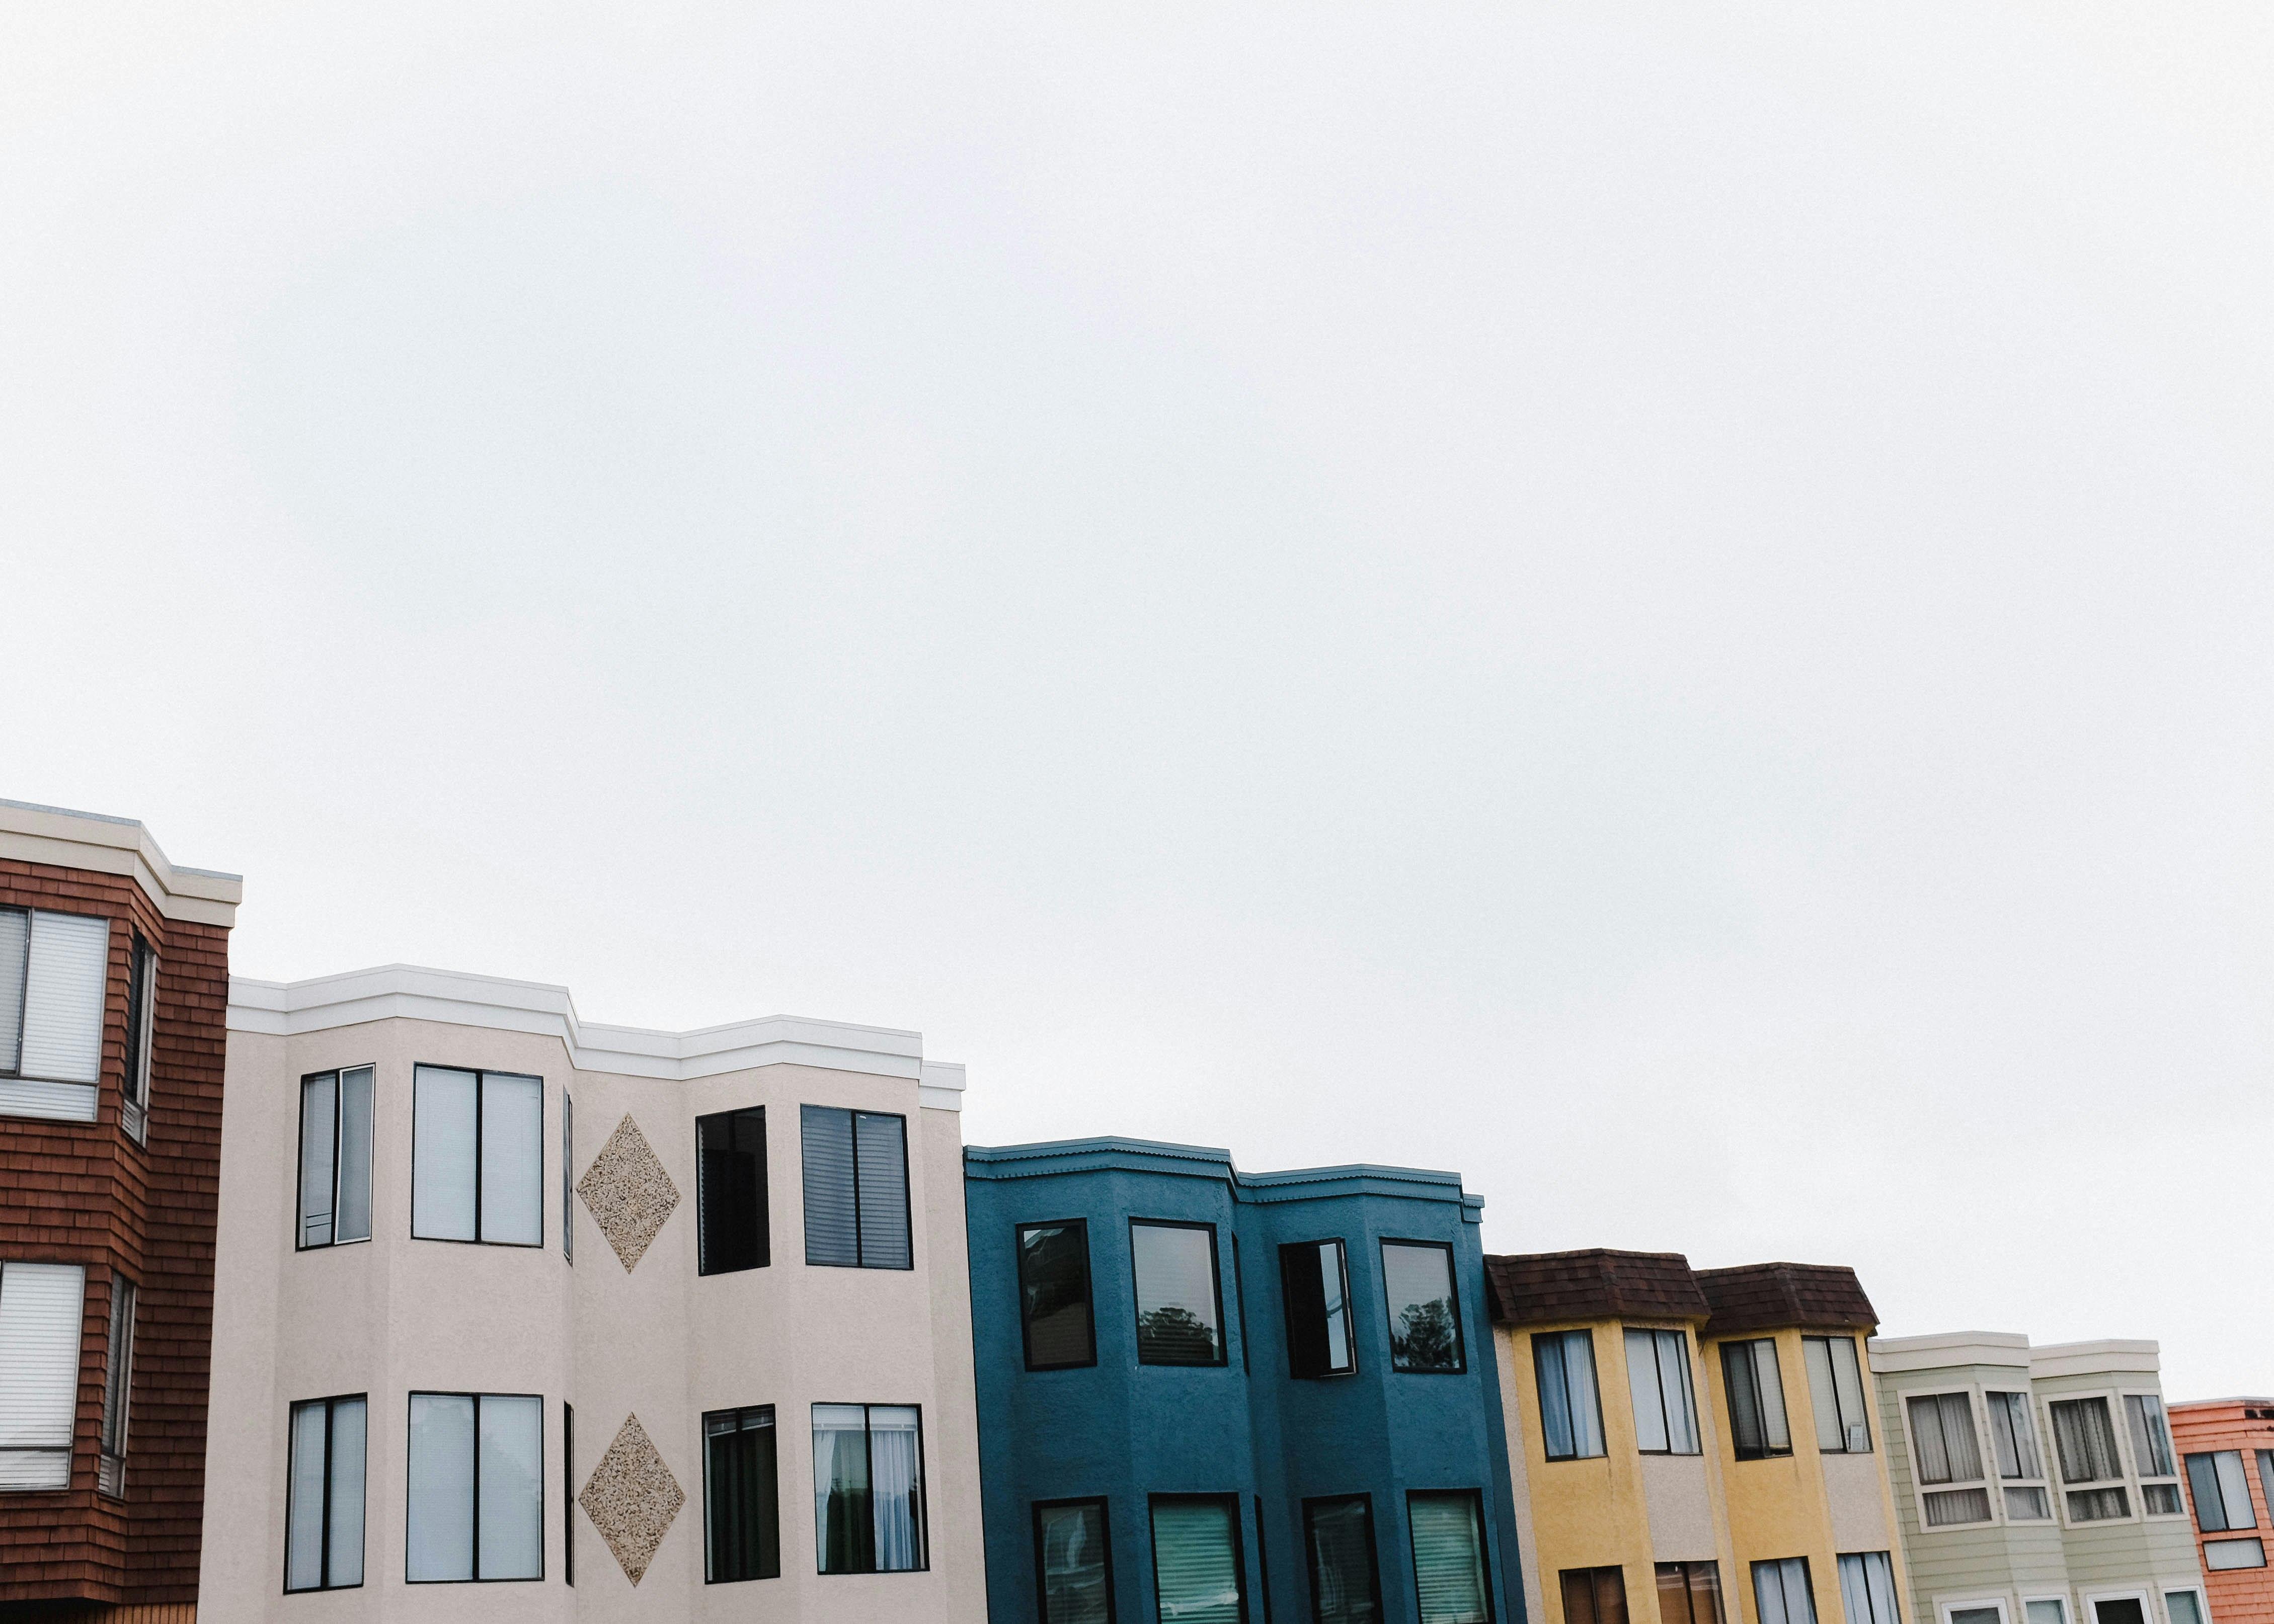 assorted-color concrete buildings